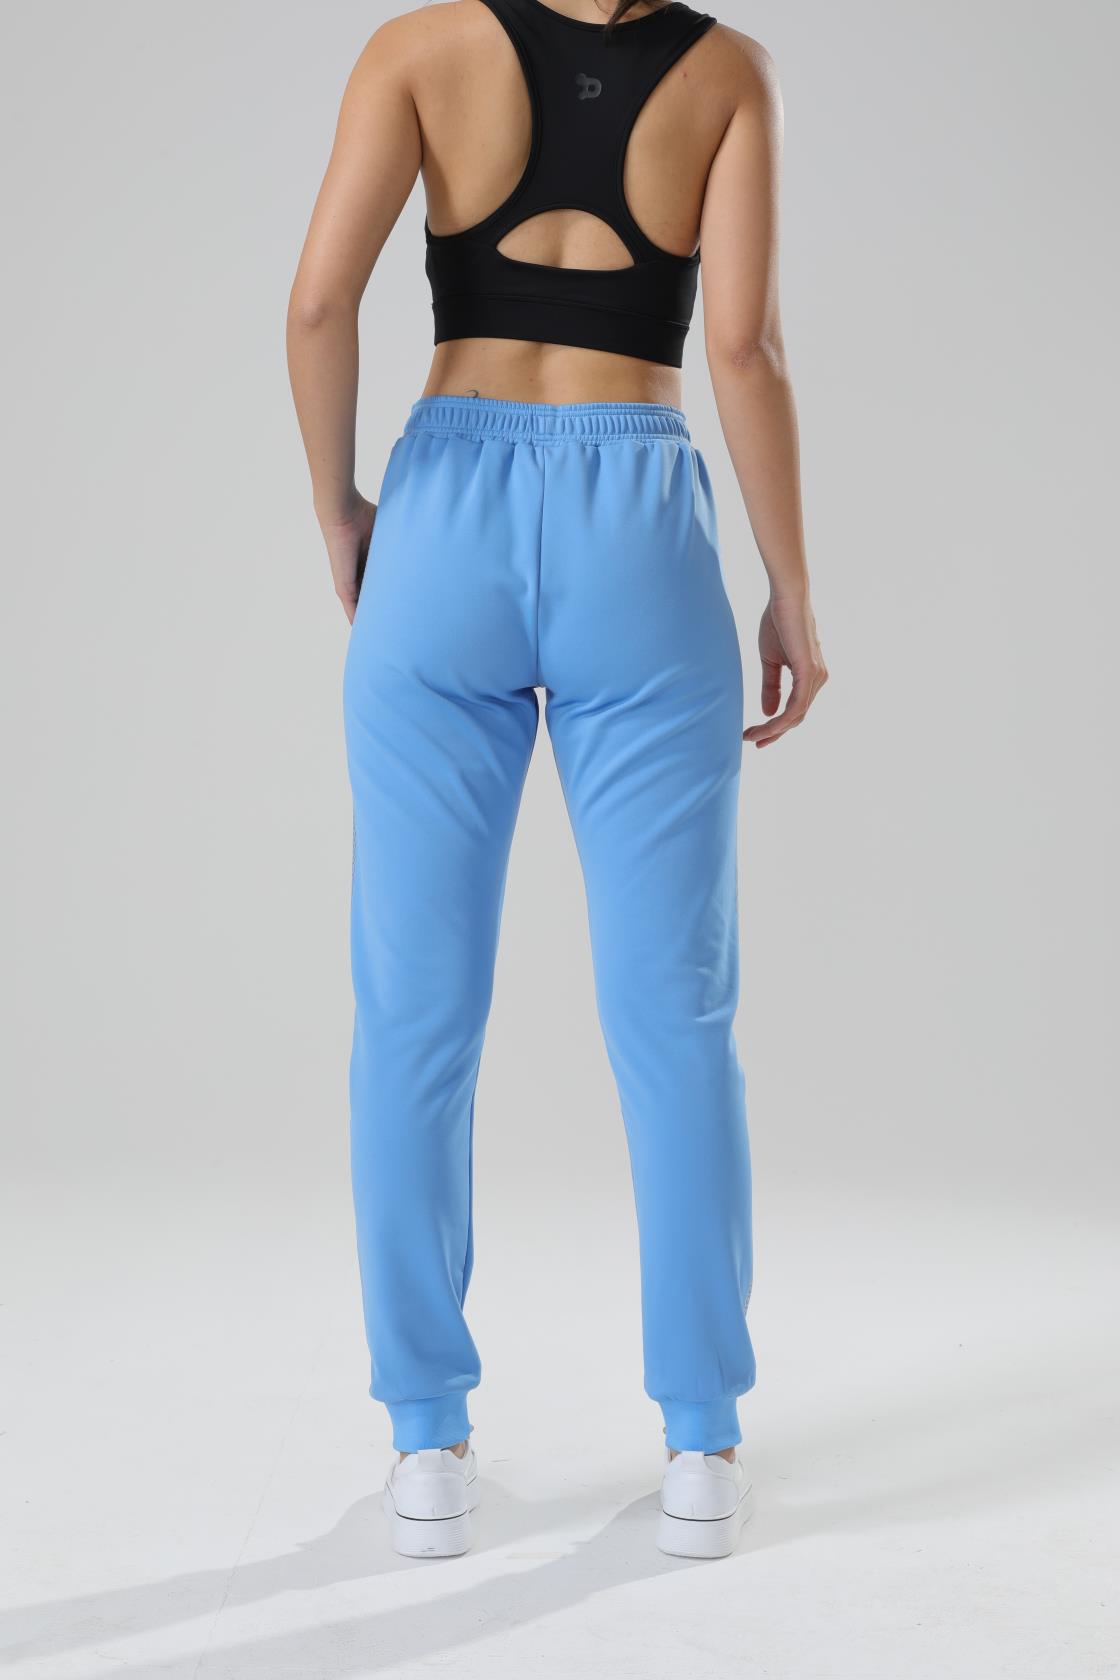 YWDJ Cute Pants for Women Trendy Women Tracksuits Sportswear Long